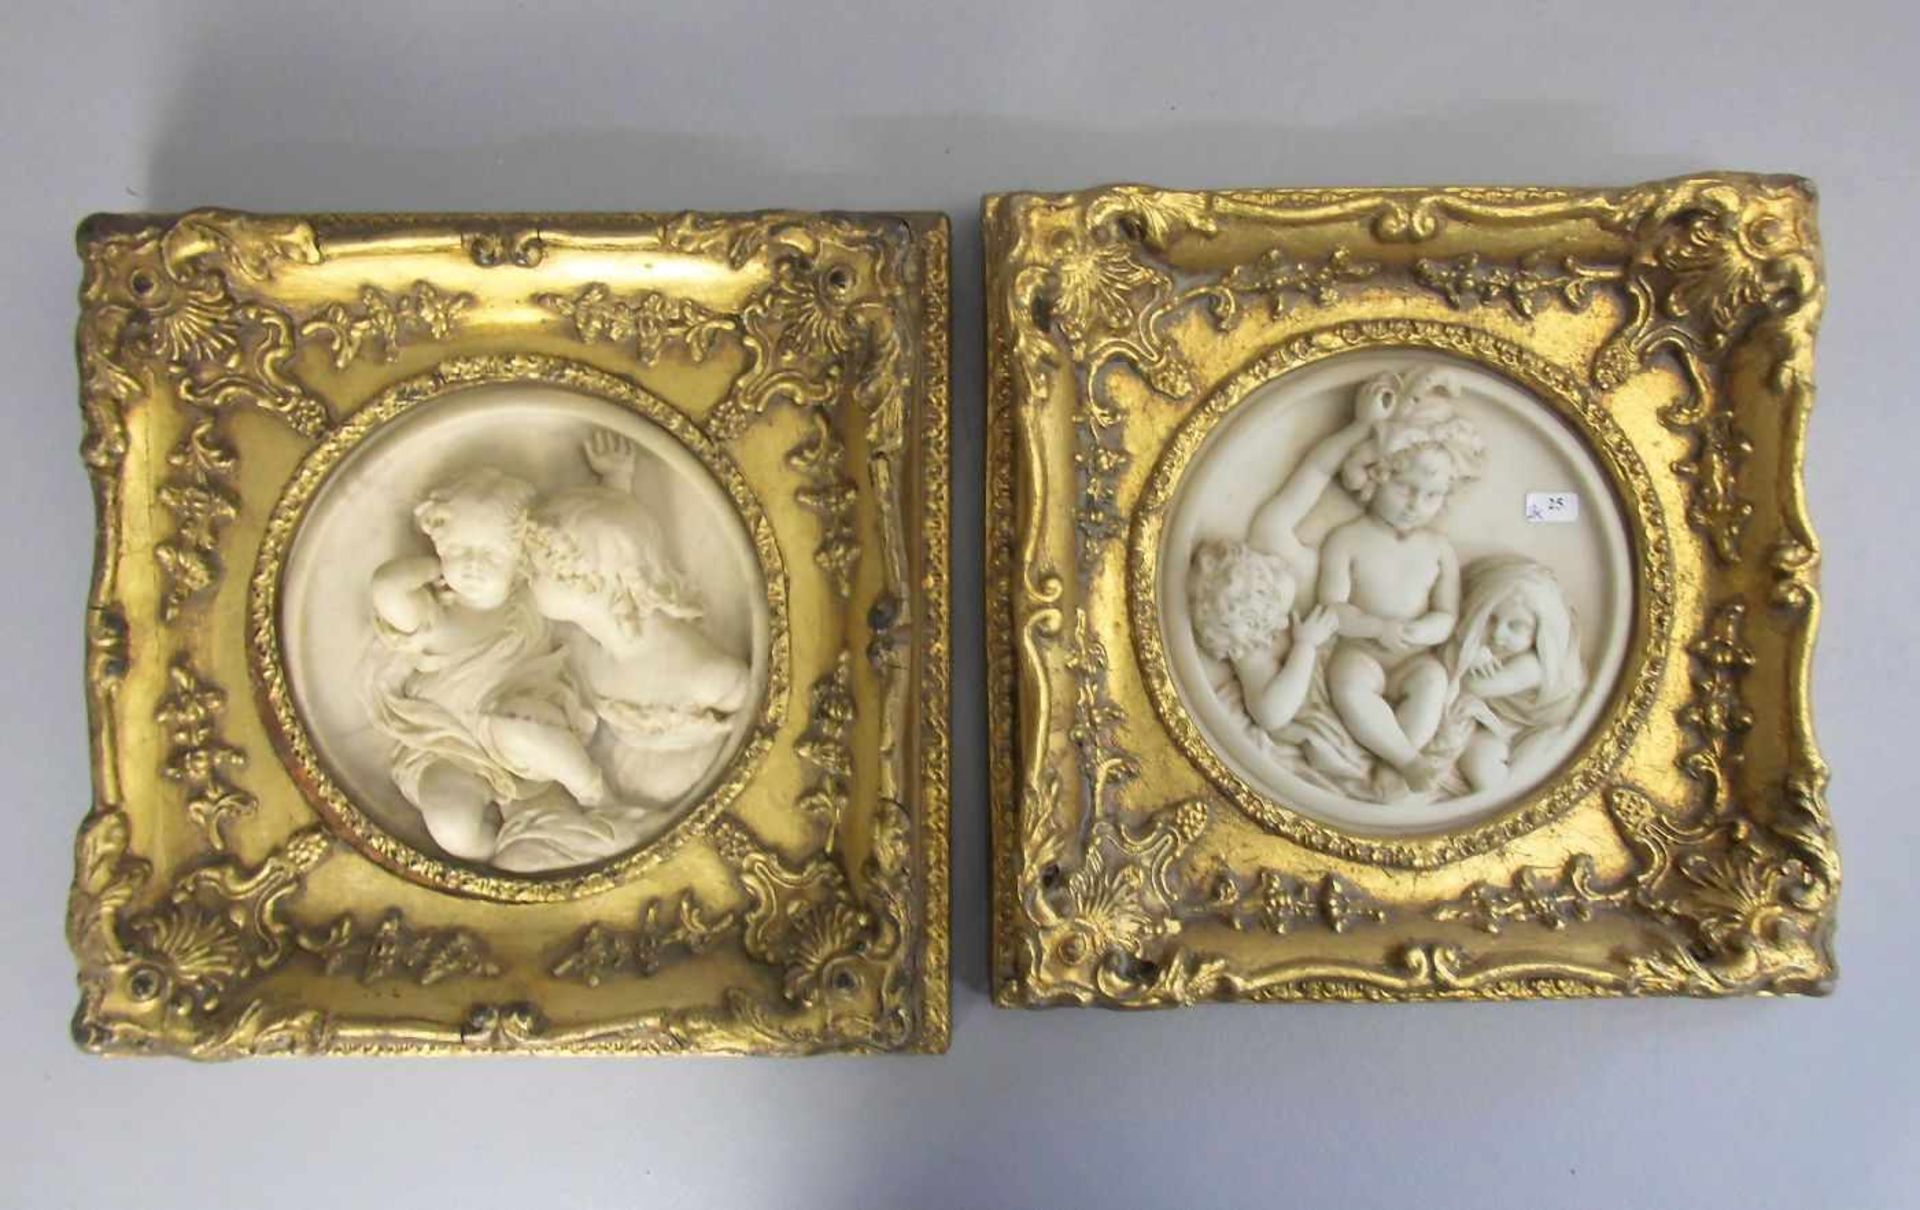 ANONYMUS (19. Jh.), Paar Reliefs: "Kinder", Marmorguss, einmal mit revers montierter Plakette mit